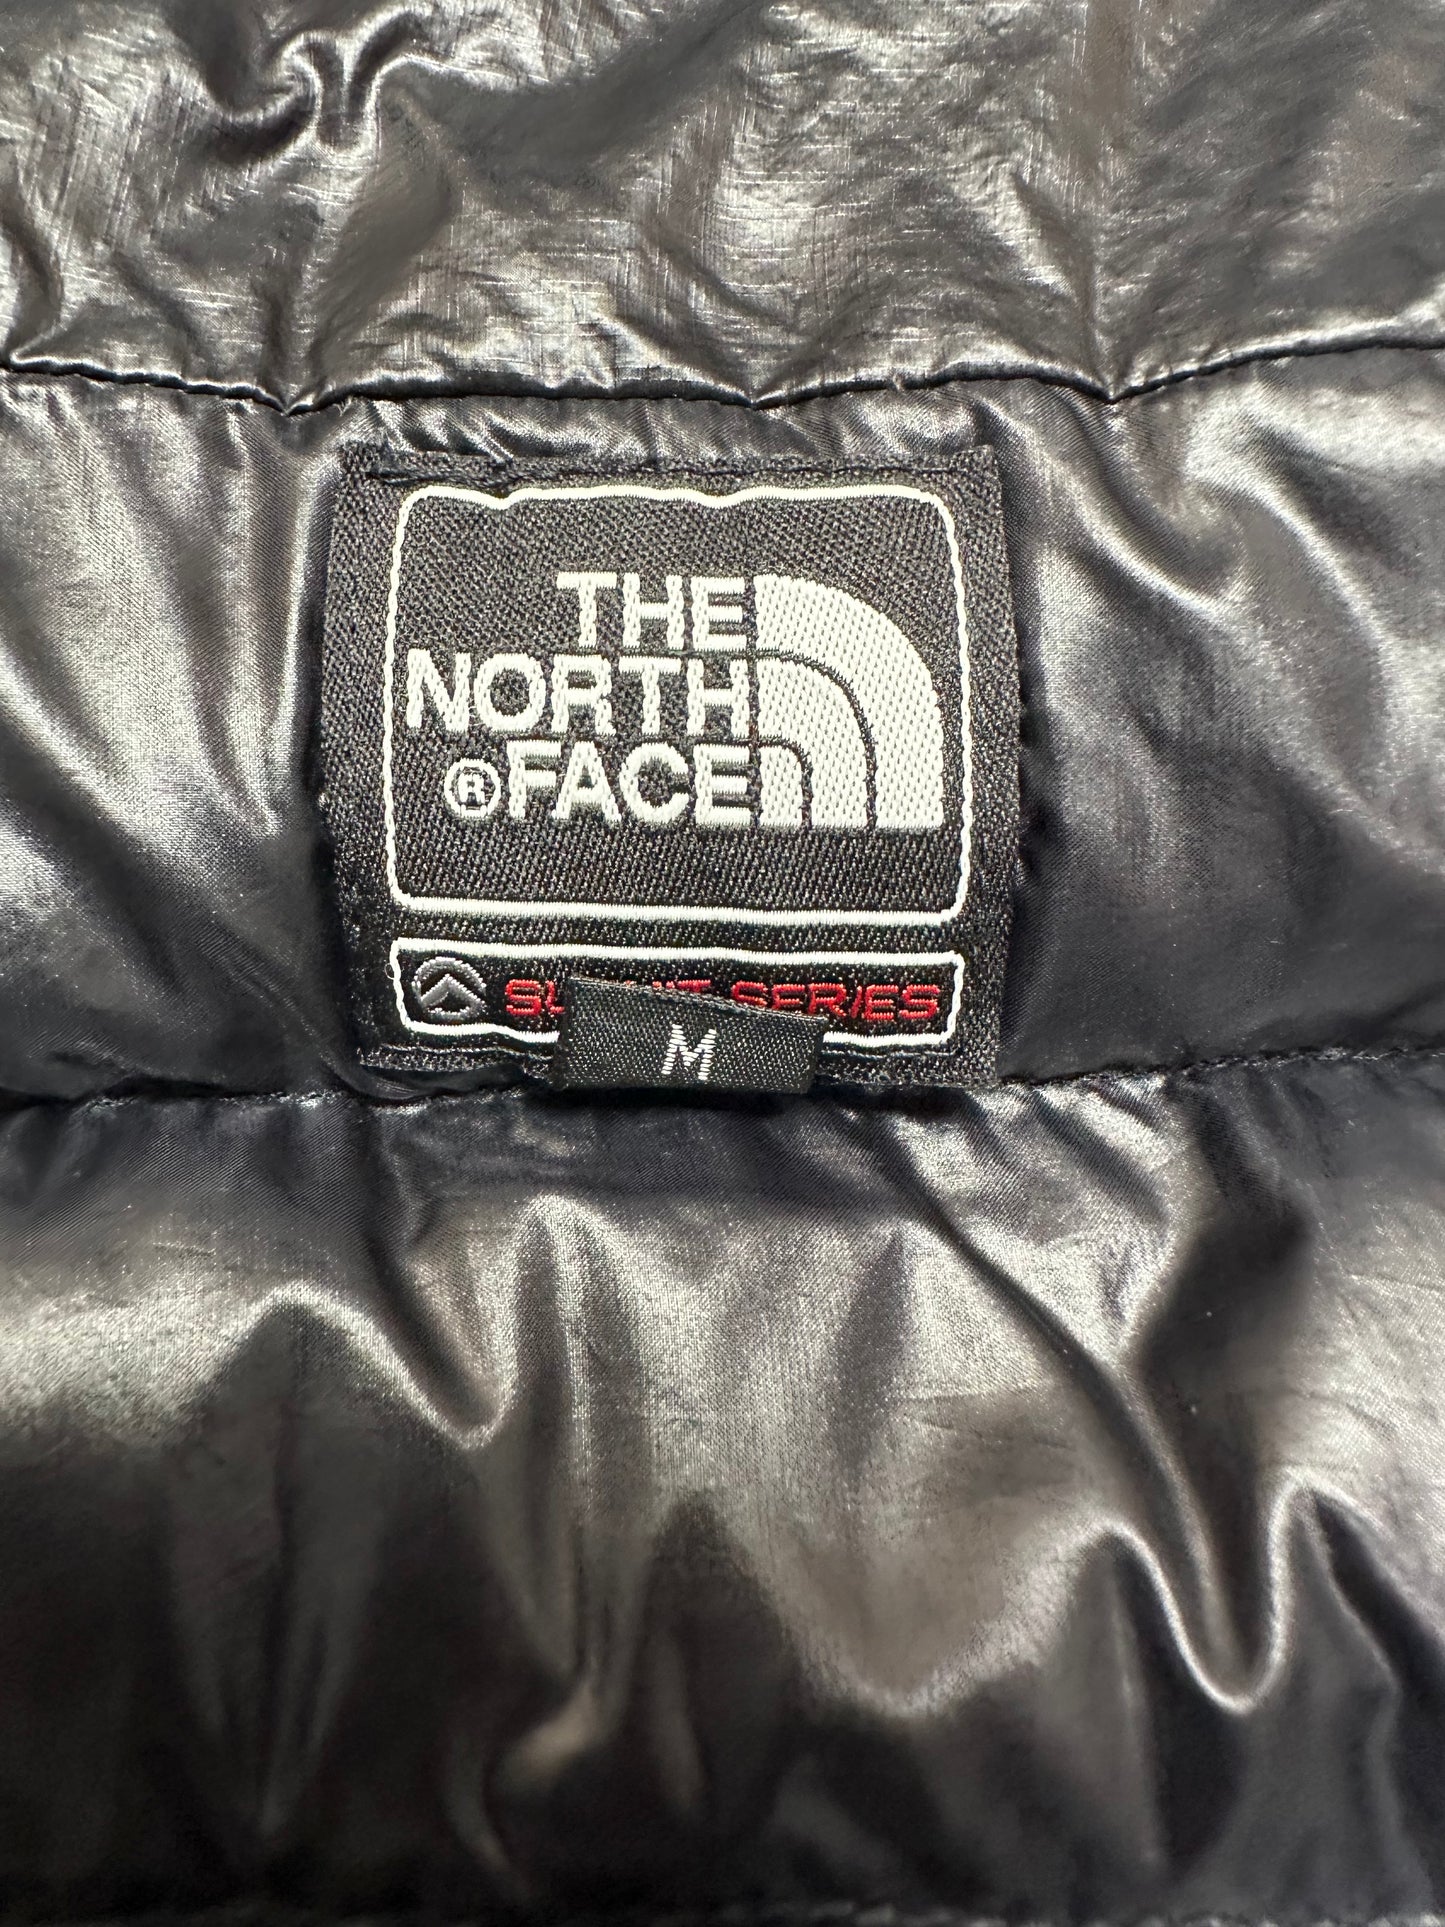 10022【THE NORTH FACE】ザノースフェイス メンズ サミットシリーズ クオンタム グース ダウン ブラック 95